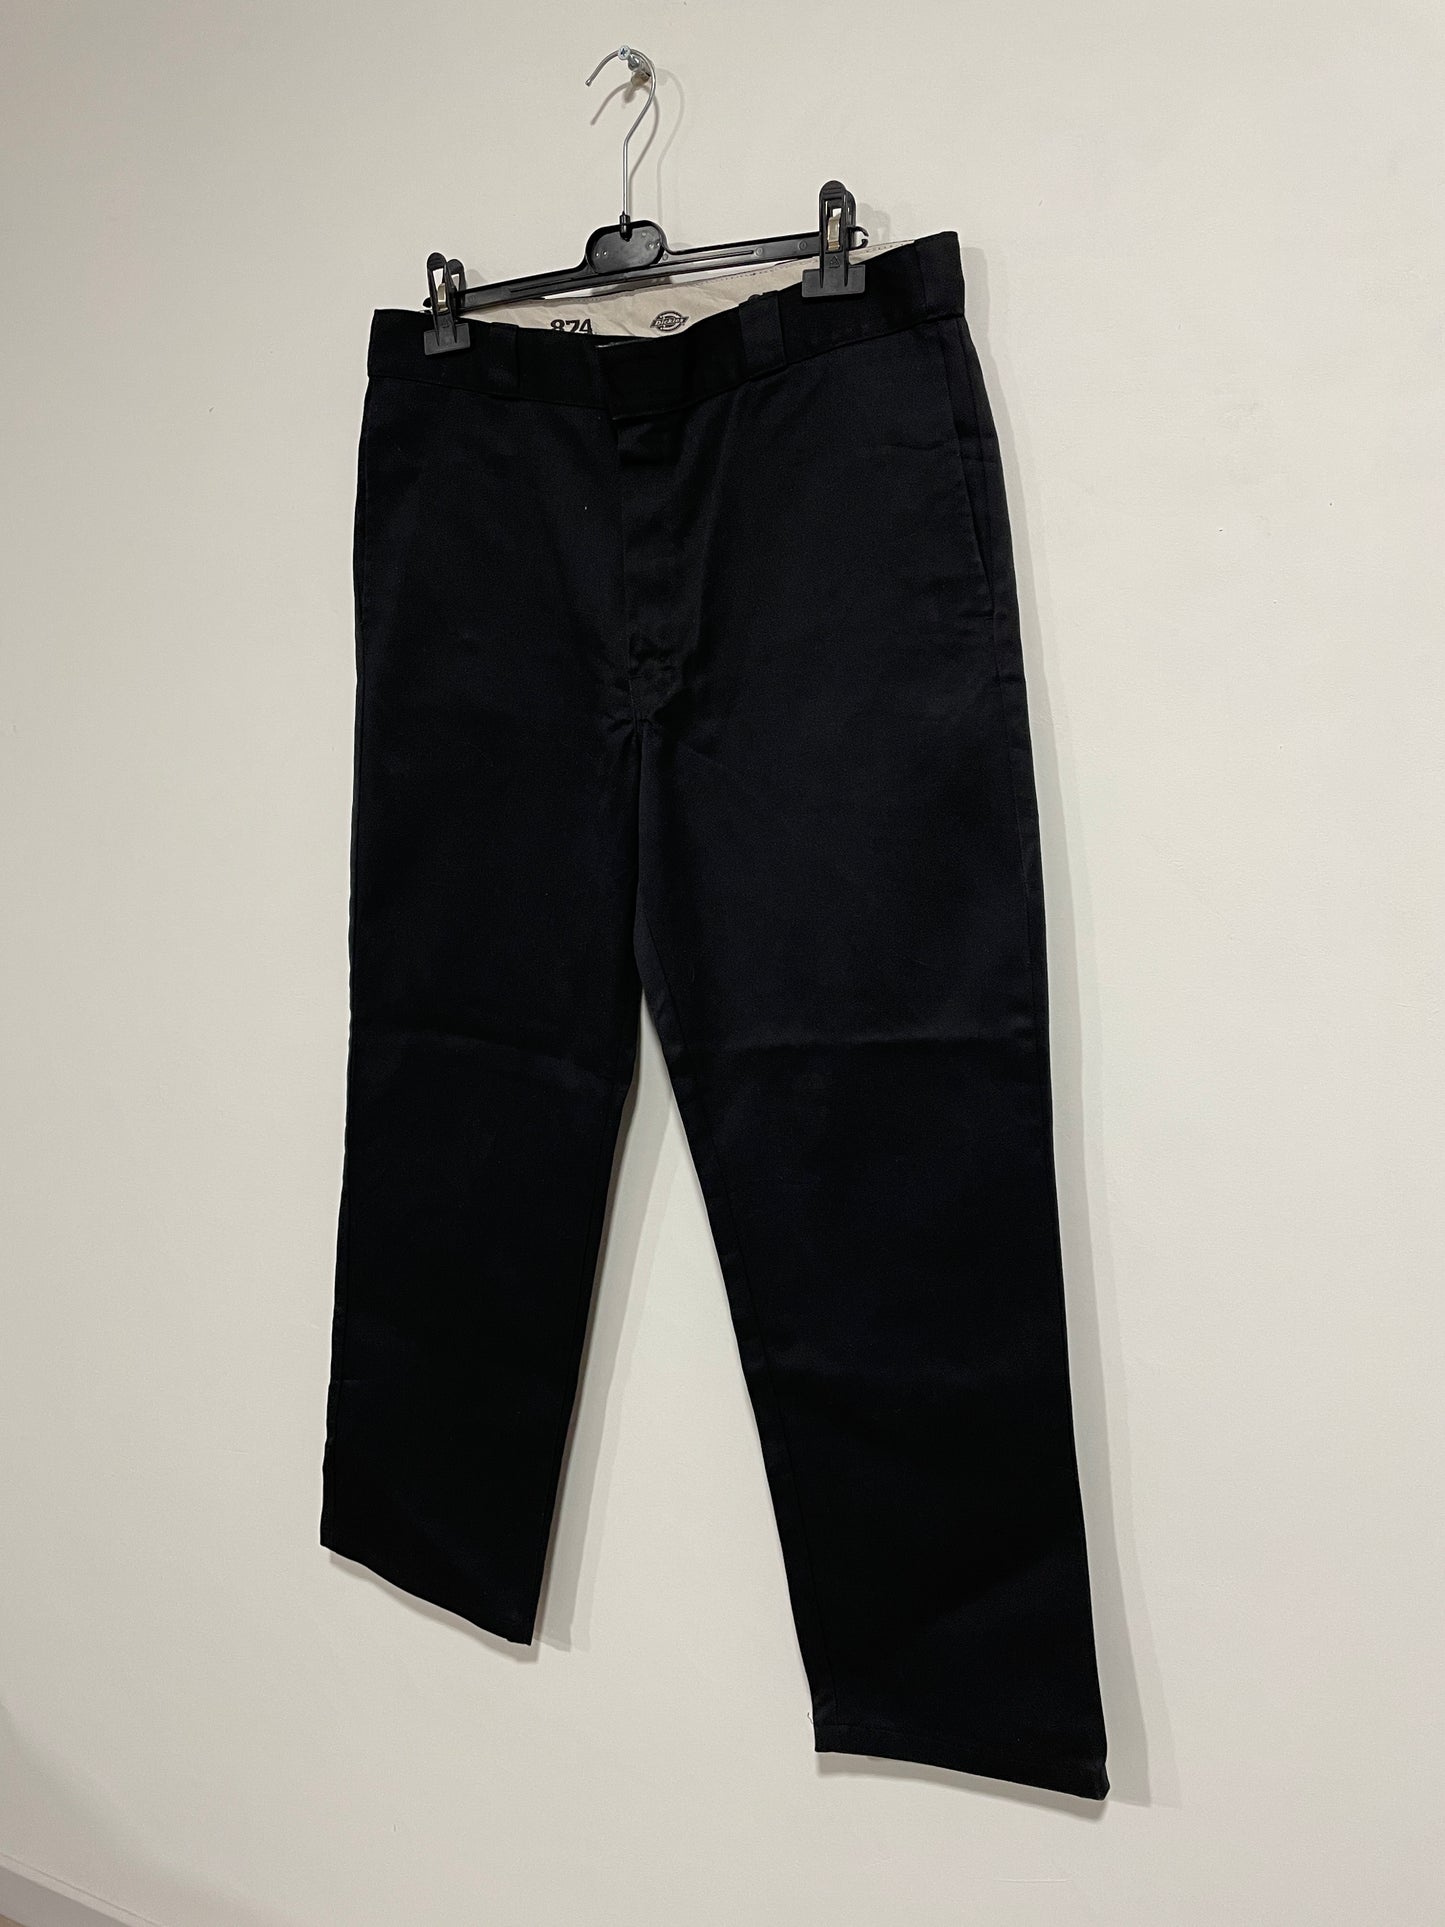 Pantalone Dickies 874 (A348)